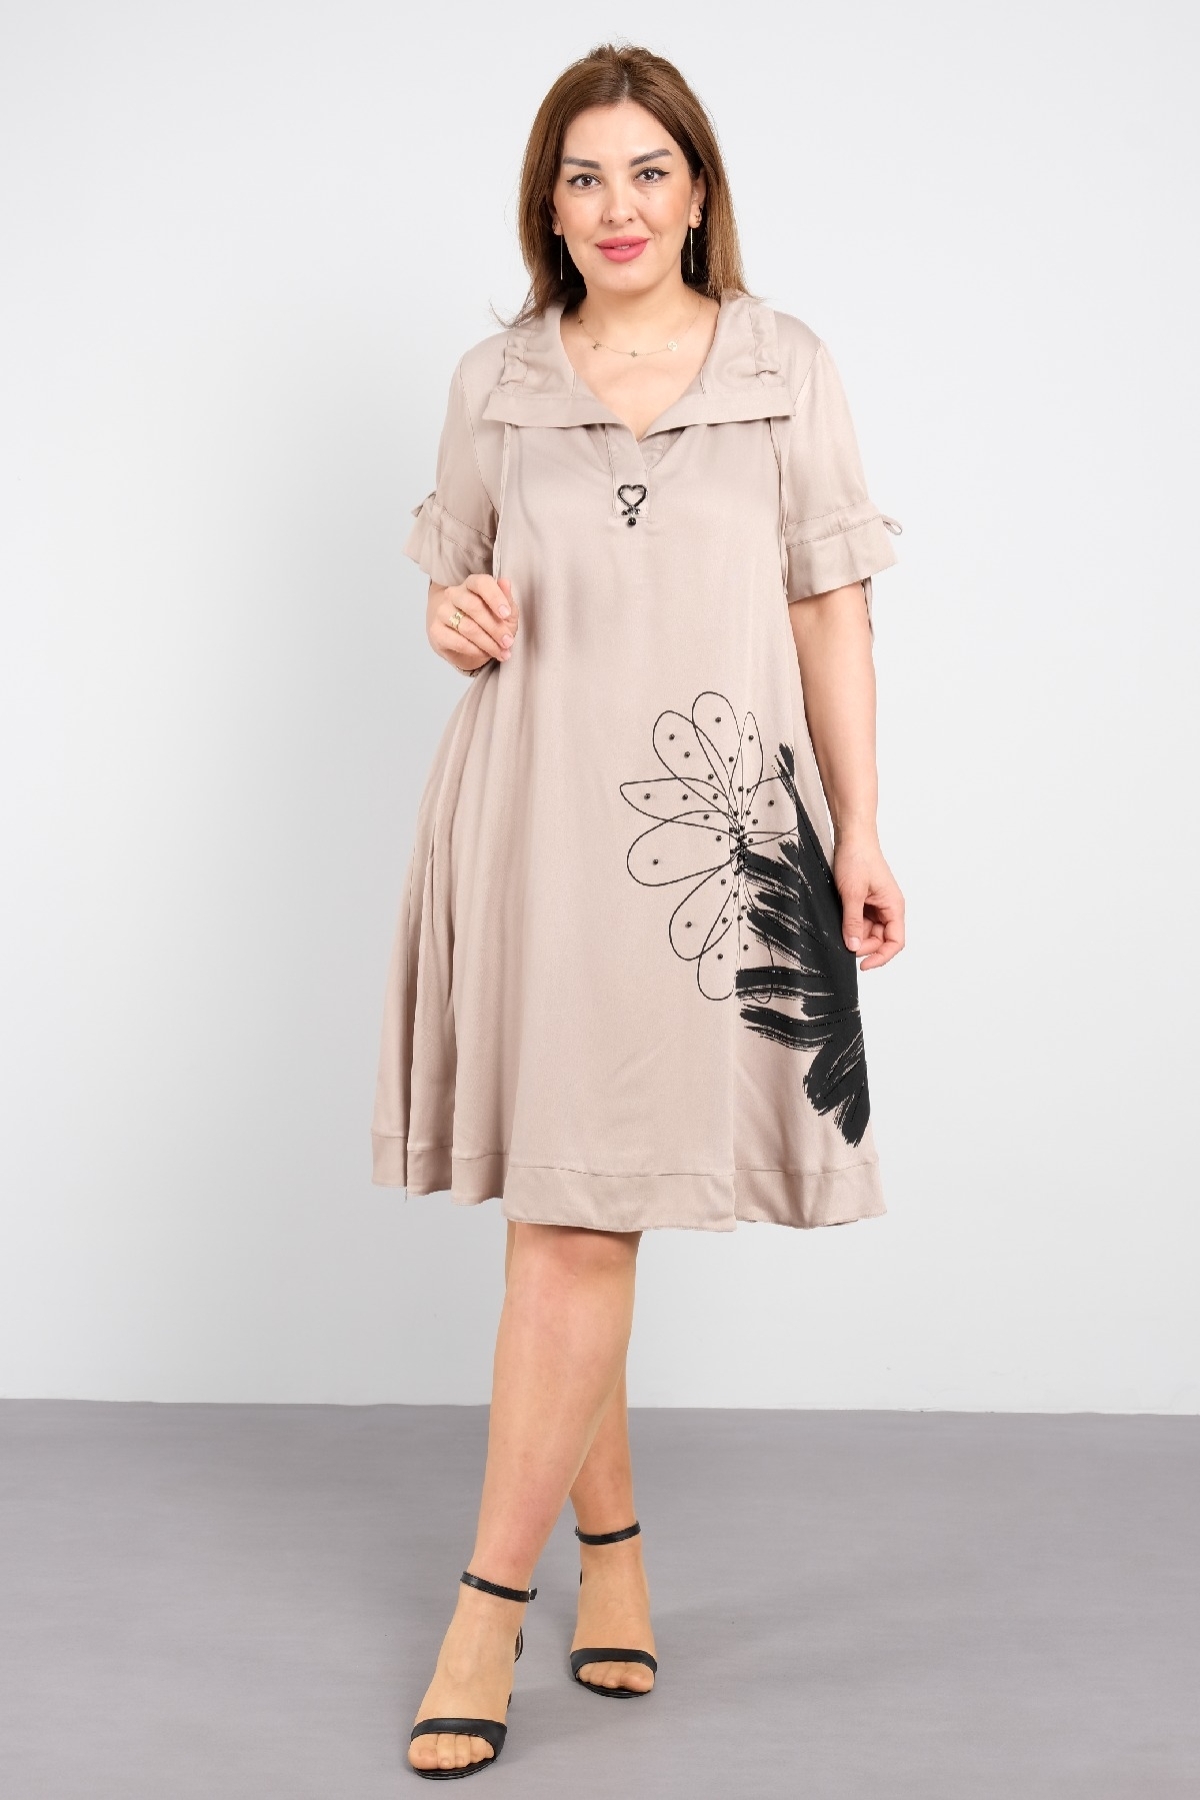 Battal beden desenli kısa kollu kadın elbise, diz hizasında şık elbise.